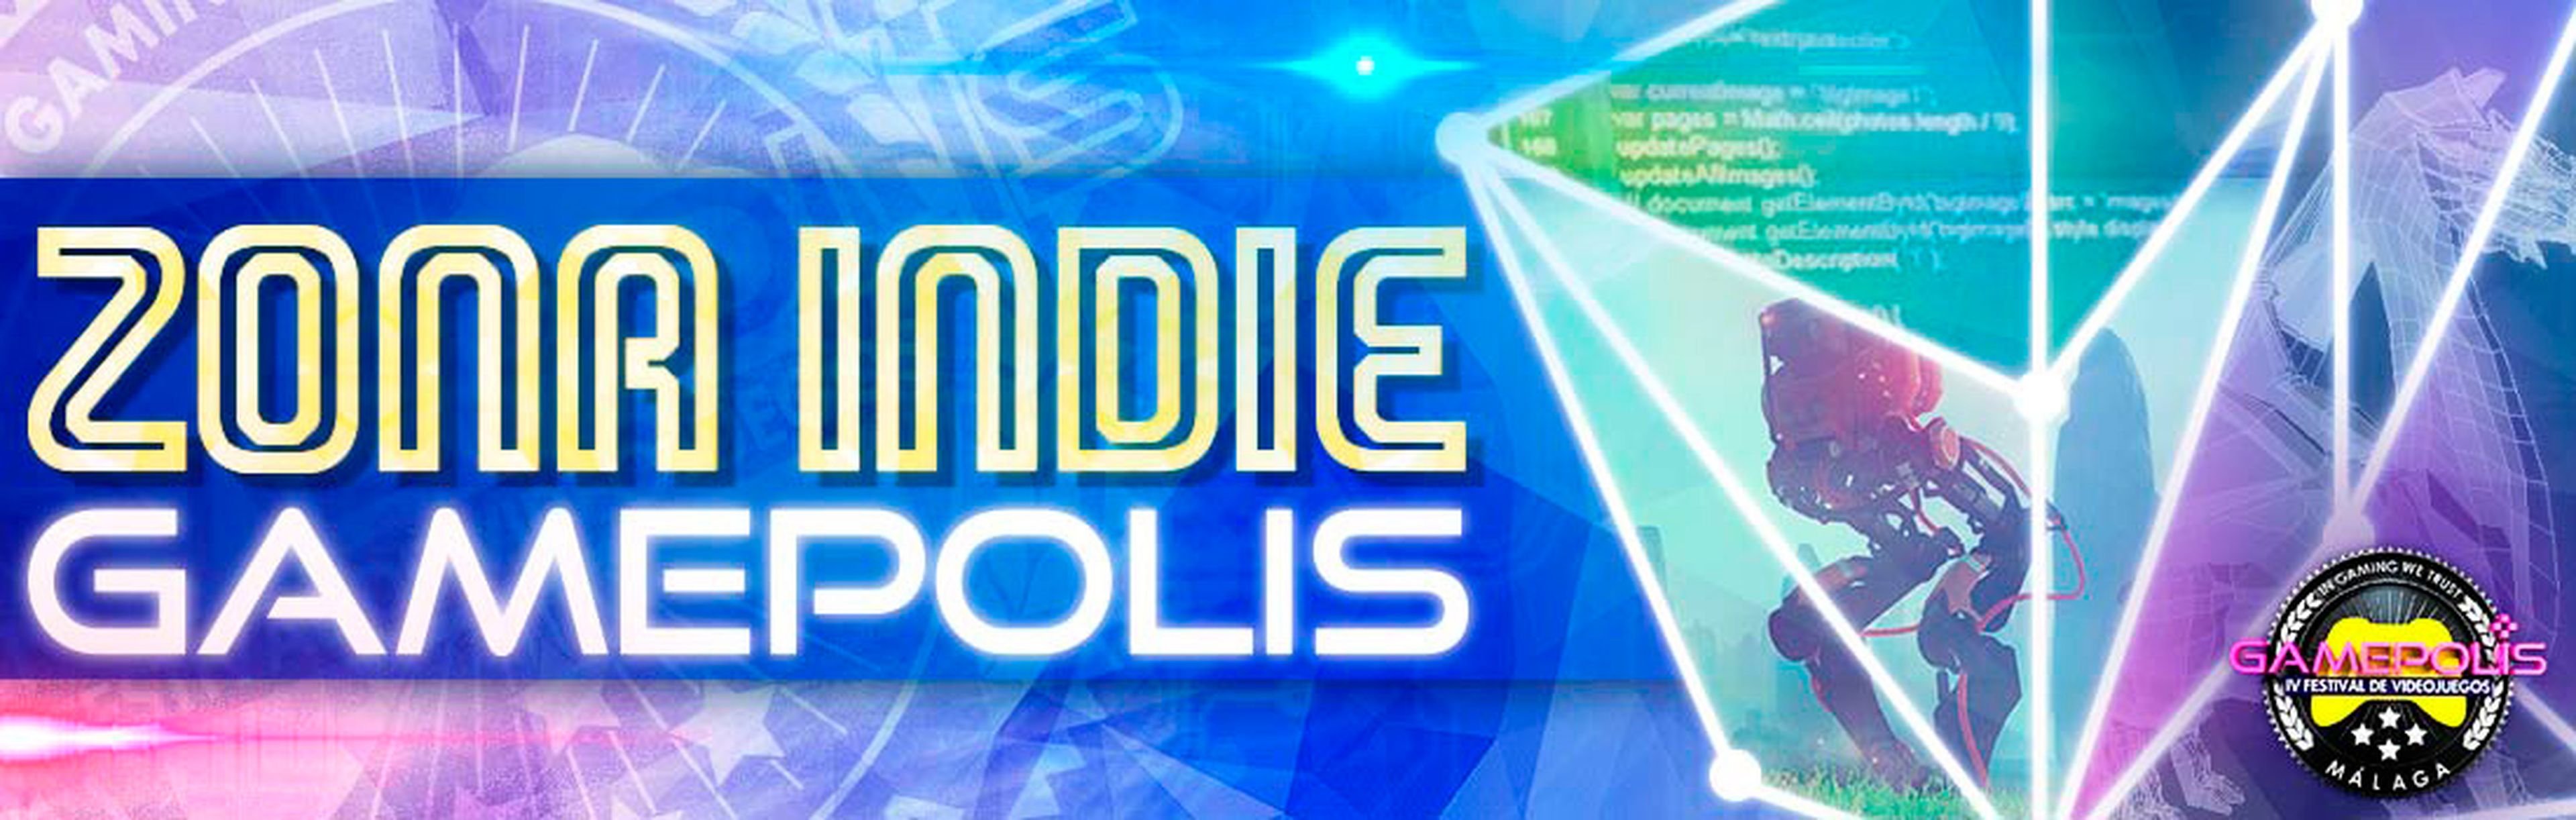 Los videojuegos presentes en la zona indie de Gamepolis 2016 podrán ganar varios premios.